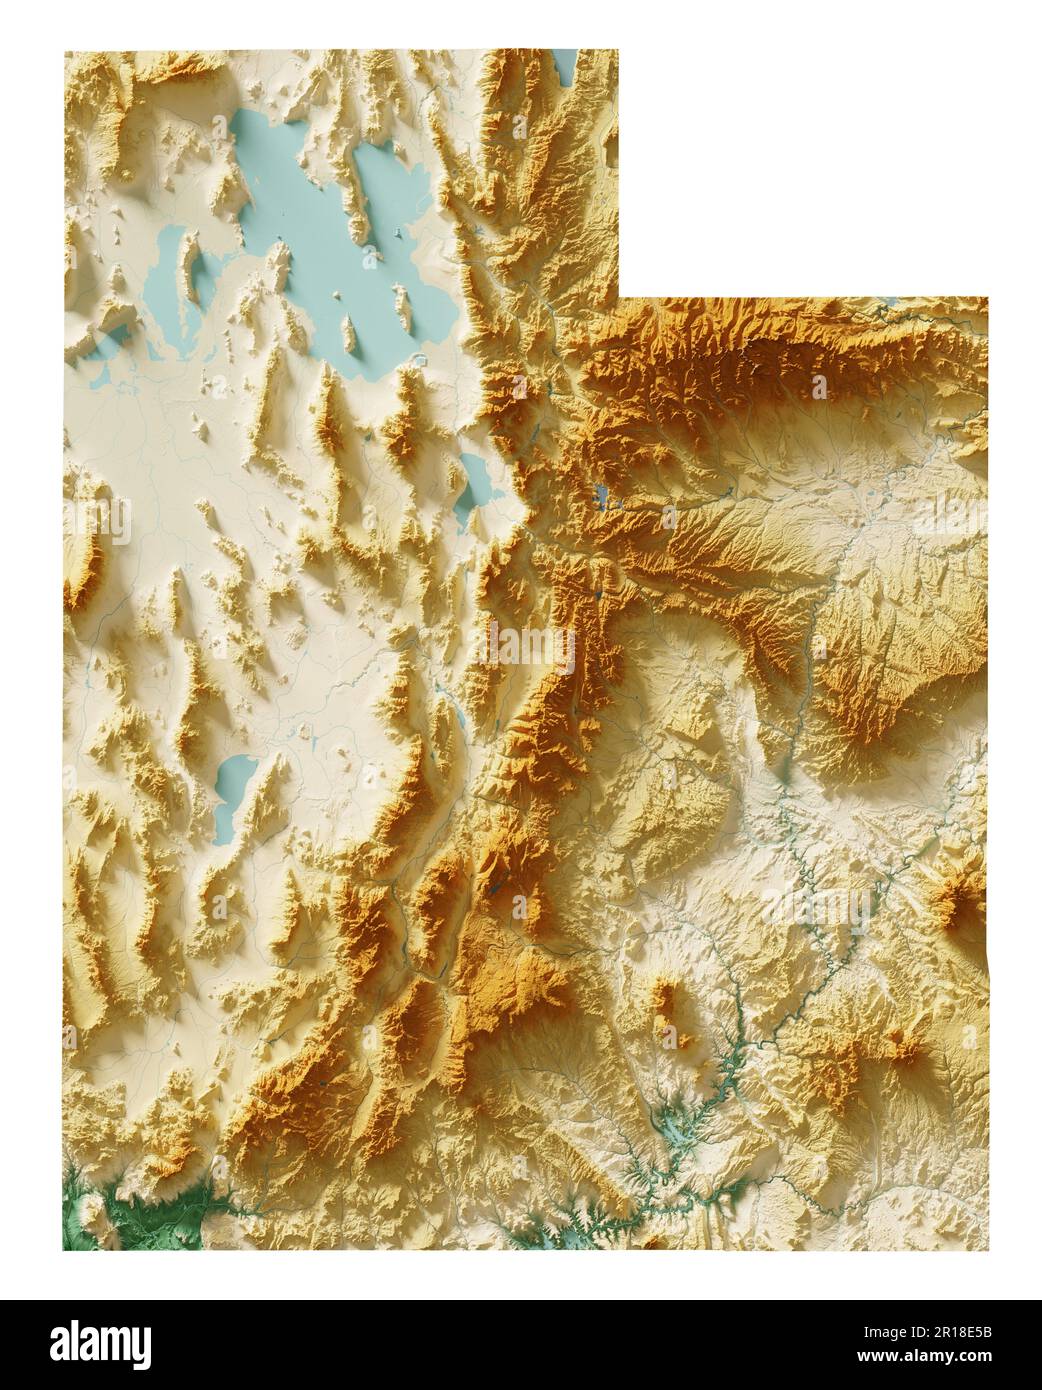 Stato dello Utah. Rendering 3D estremamente dettagliato di una mappa in rilievo ombreggiata con fiumi e laghi. Colorato dall'elevazione. Creato con i dati satellitari. Foto Stock